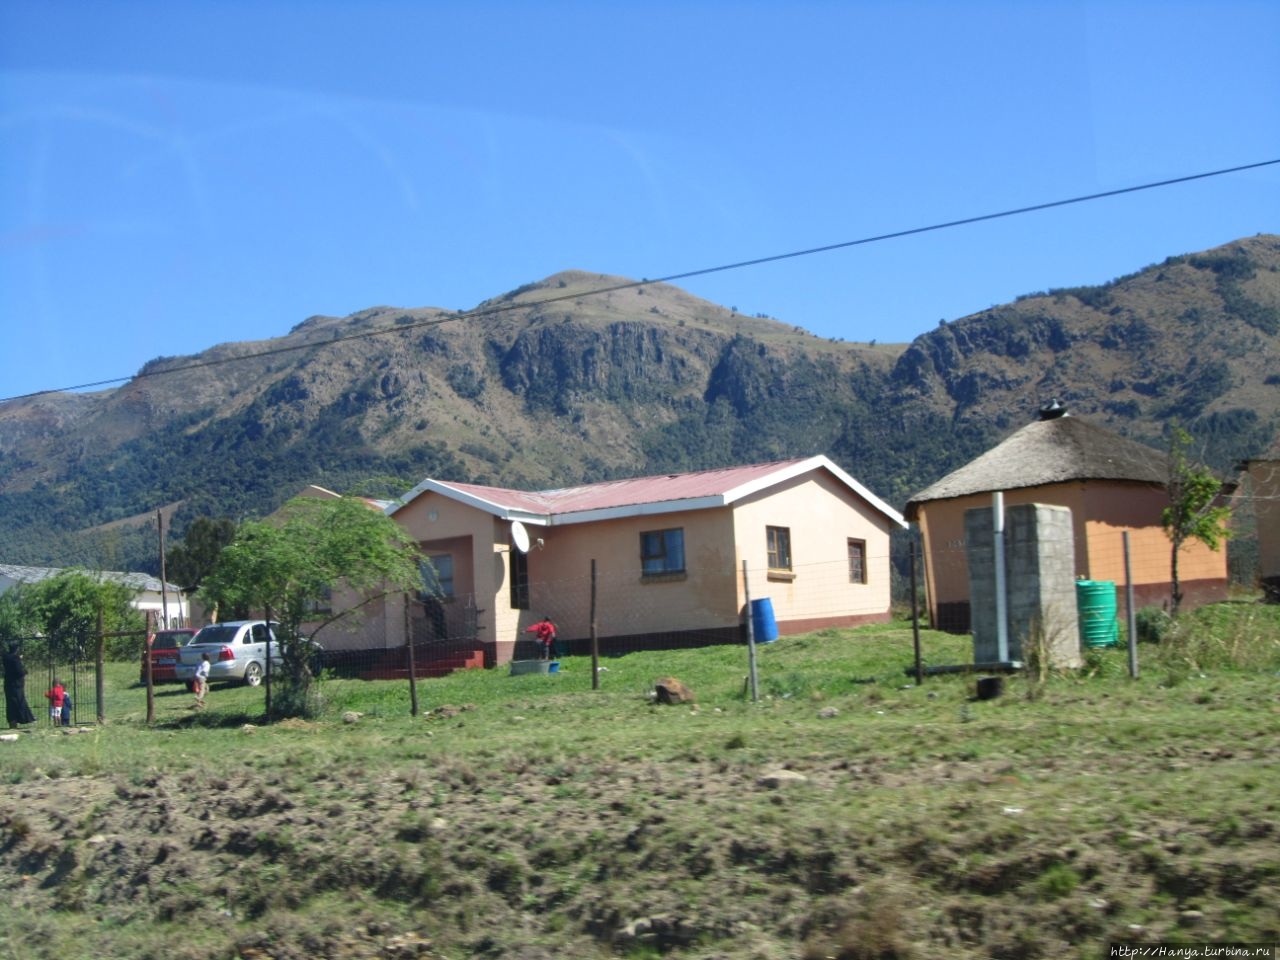 Музей Нельсона Манделы в деревне Умтата, ЮАР